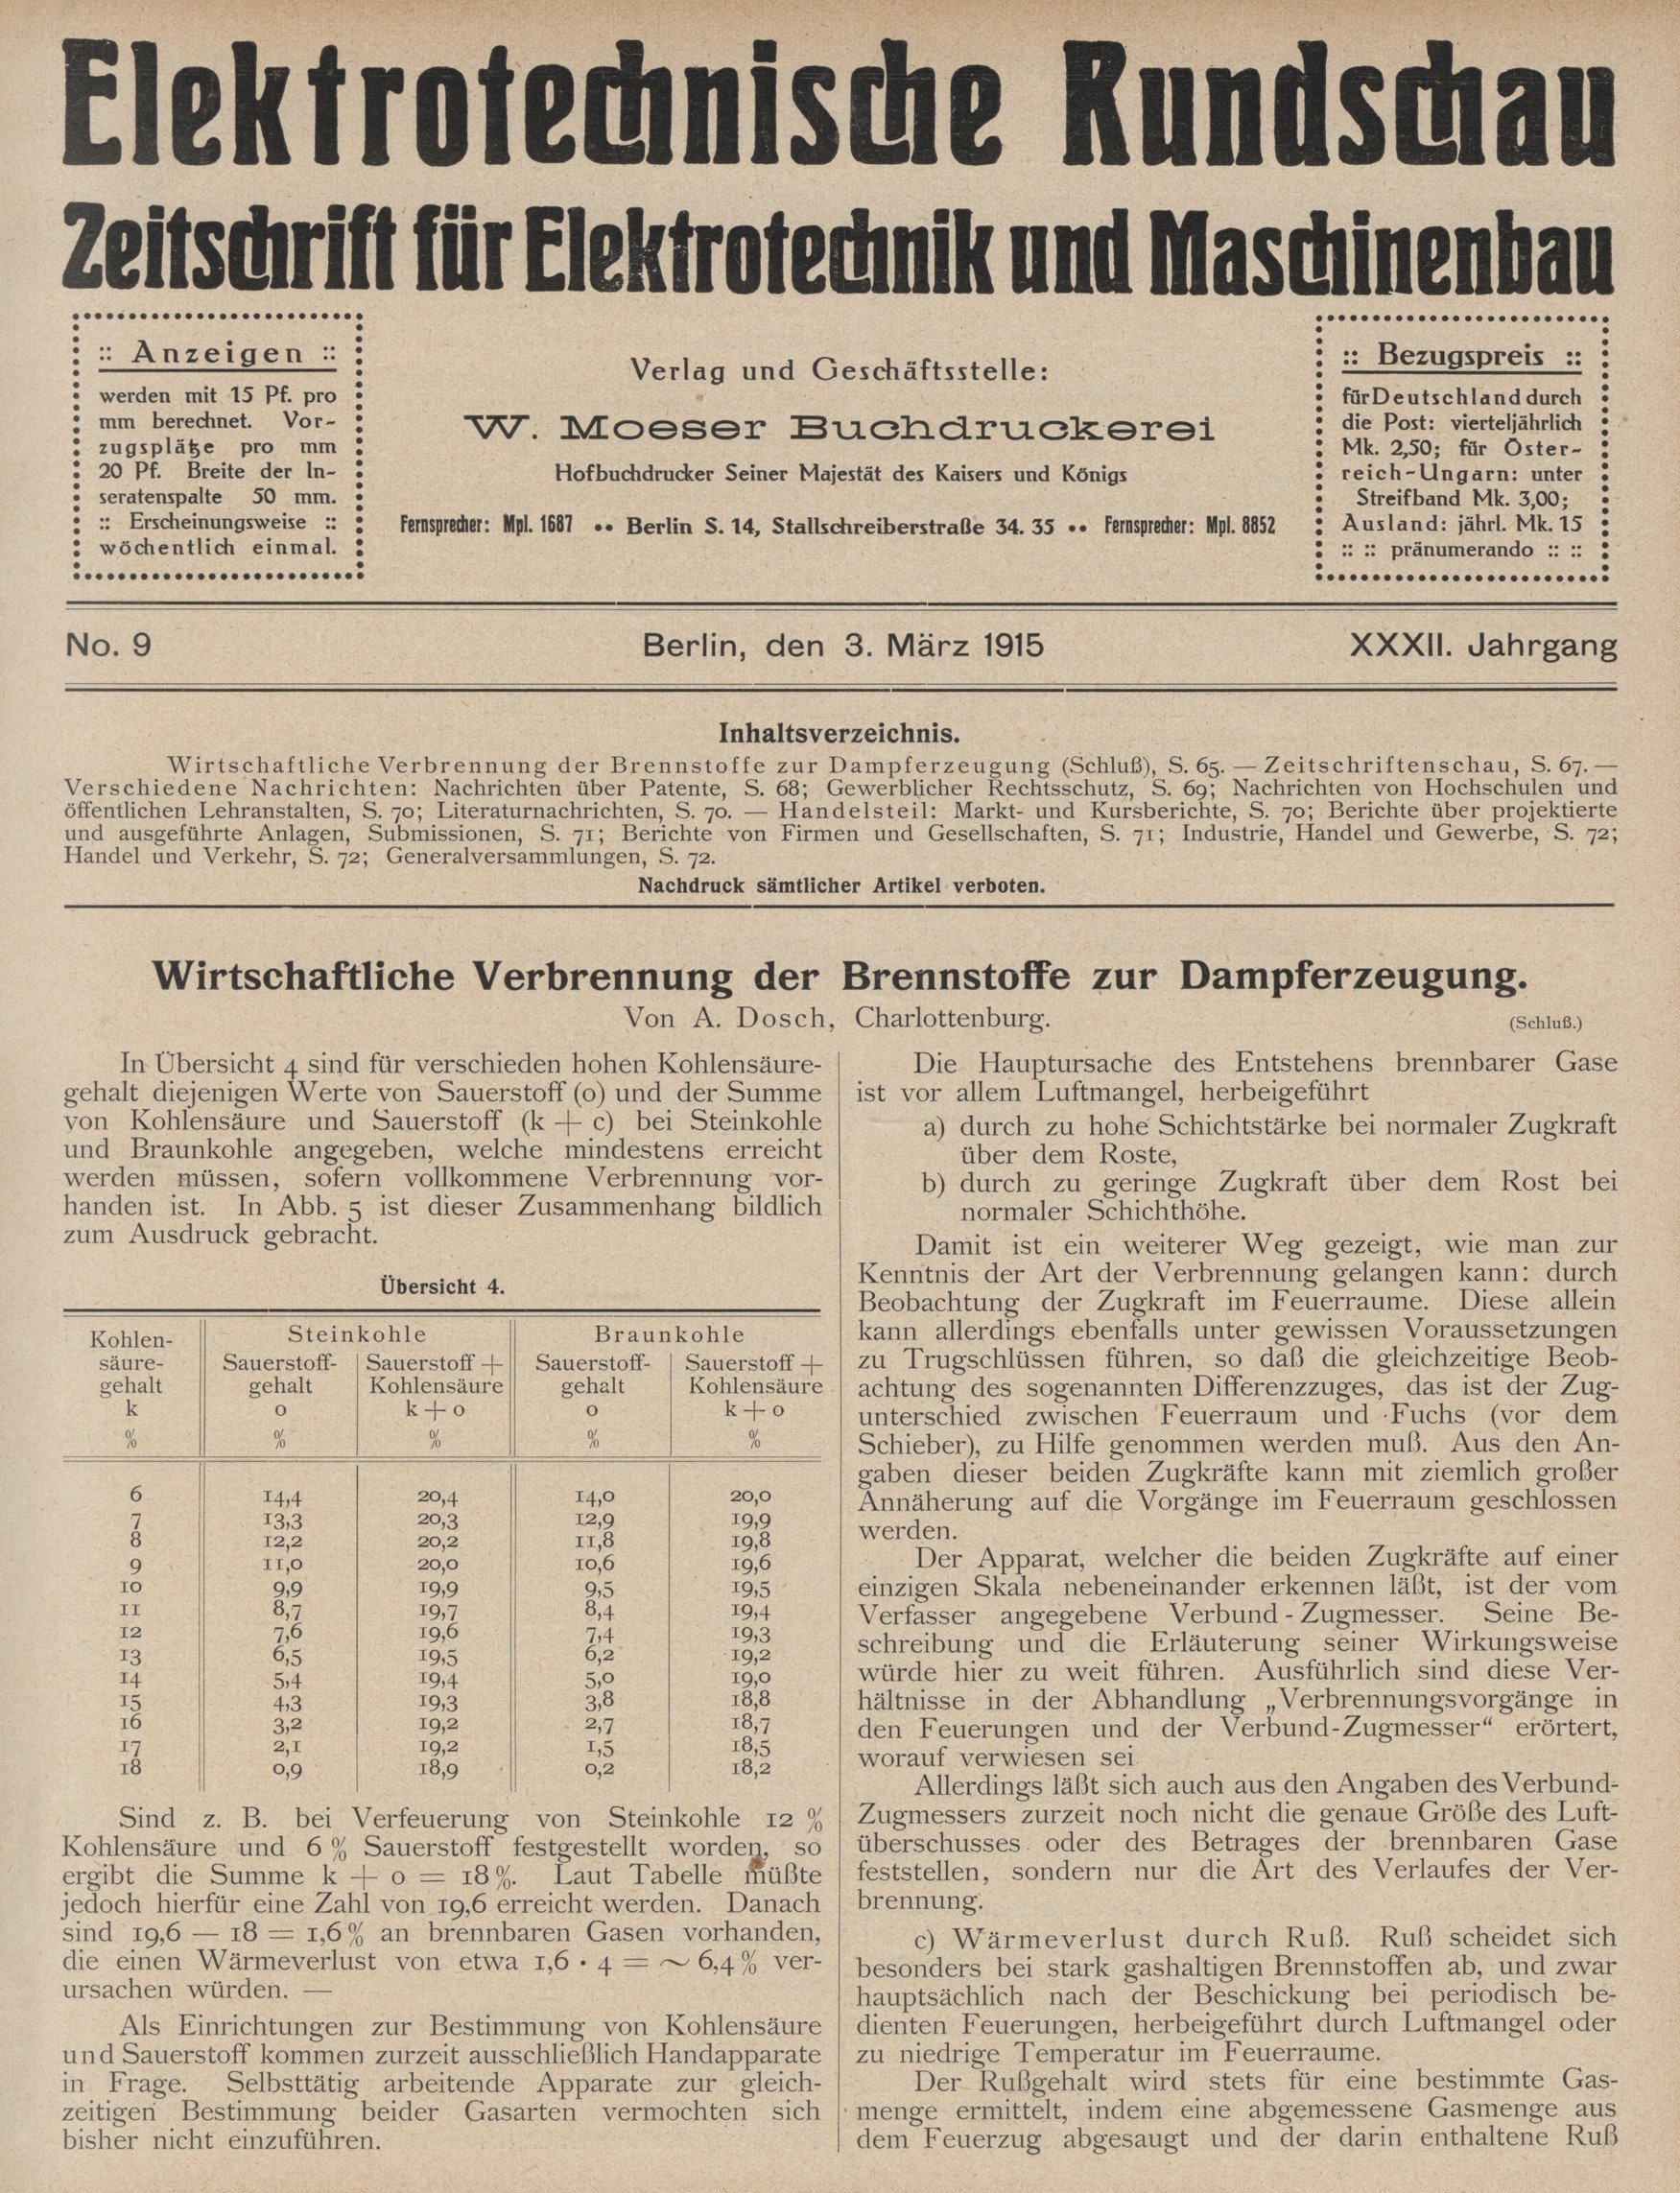 Elektrotechnische Rundschau : Zeitschrift für Elektrotechnik und Maschinenbau + Polytechnische Rundschau, No. 9, XXXII. Jahrgang